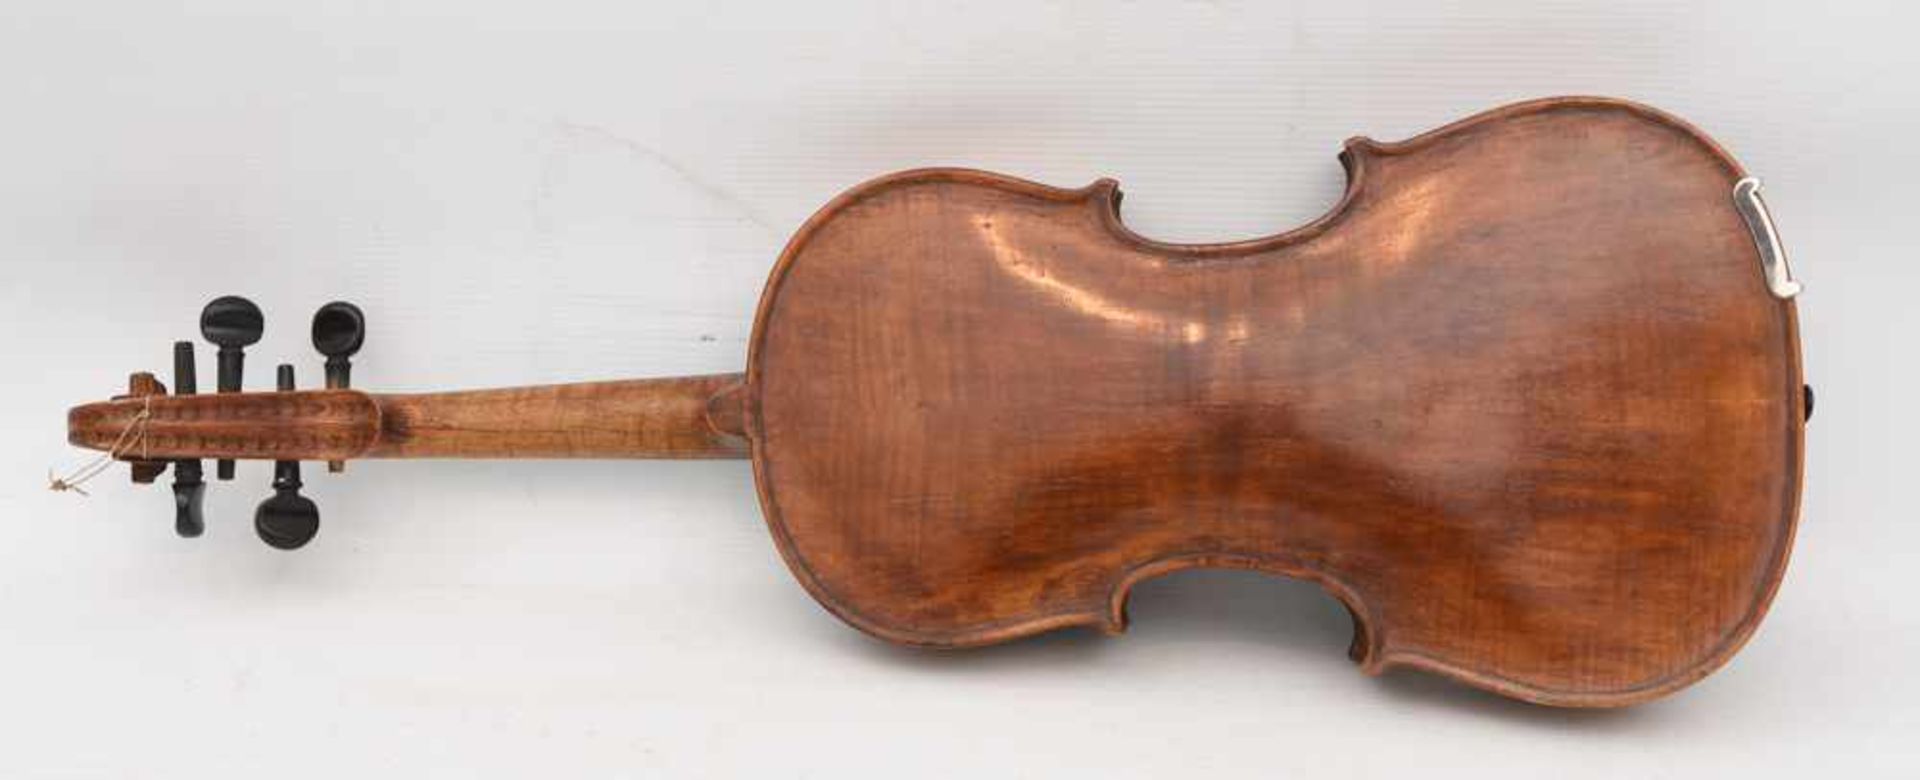 GEIGE 1, Holz/Rosshaar, Deutschland 1. Hälfte 20. Jahrhundert Geige im Kasten mit Bogen. Beschädigt. - Bild 3 aus 8